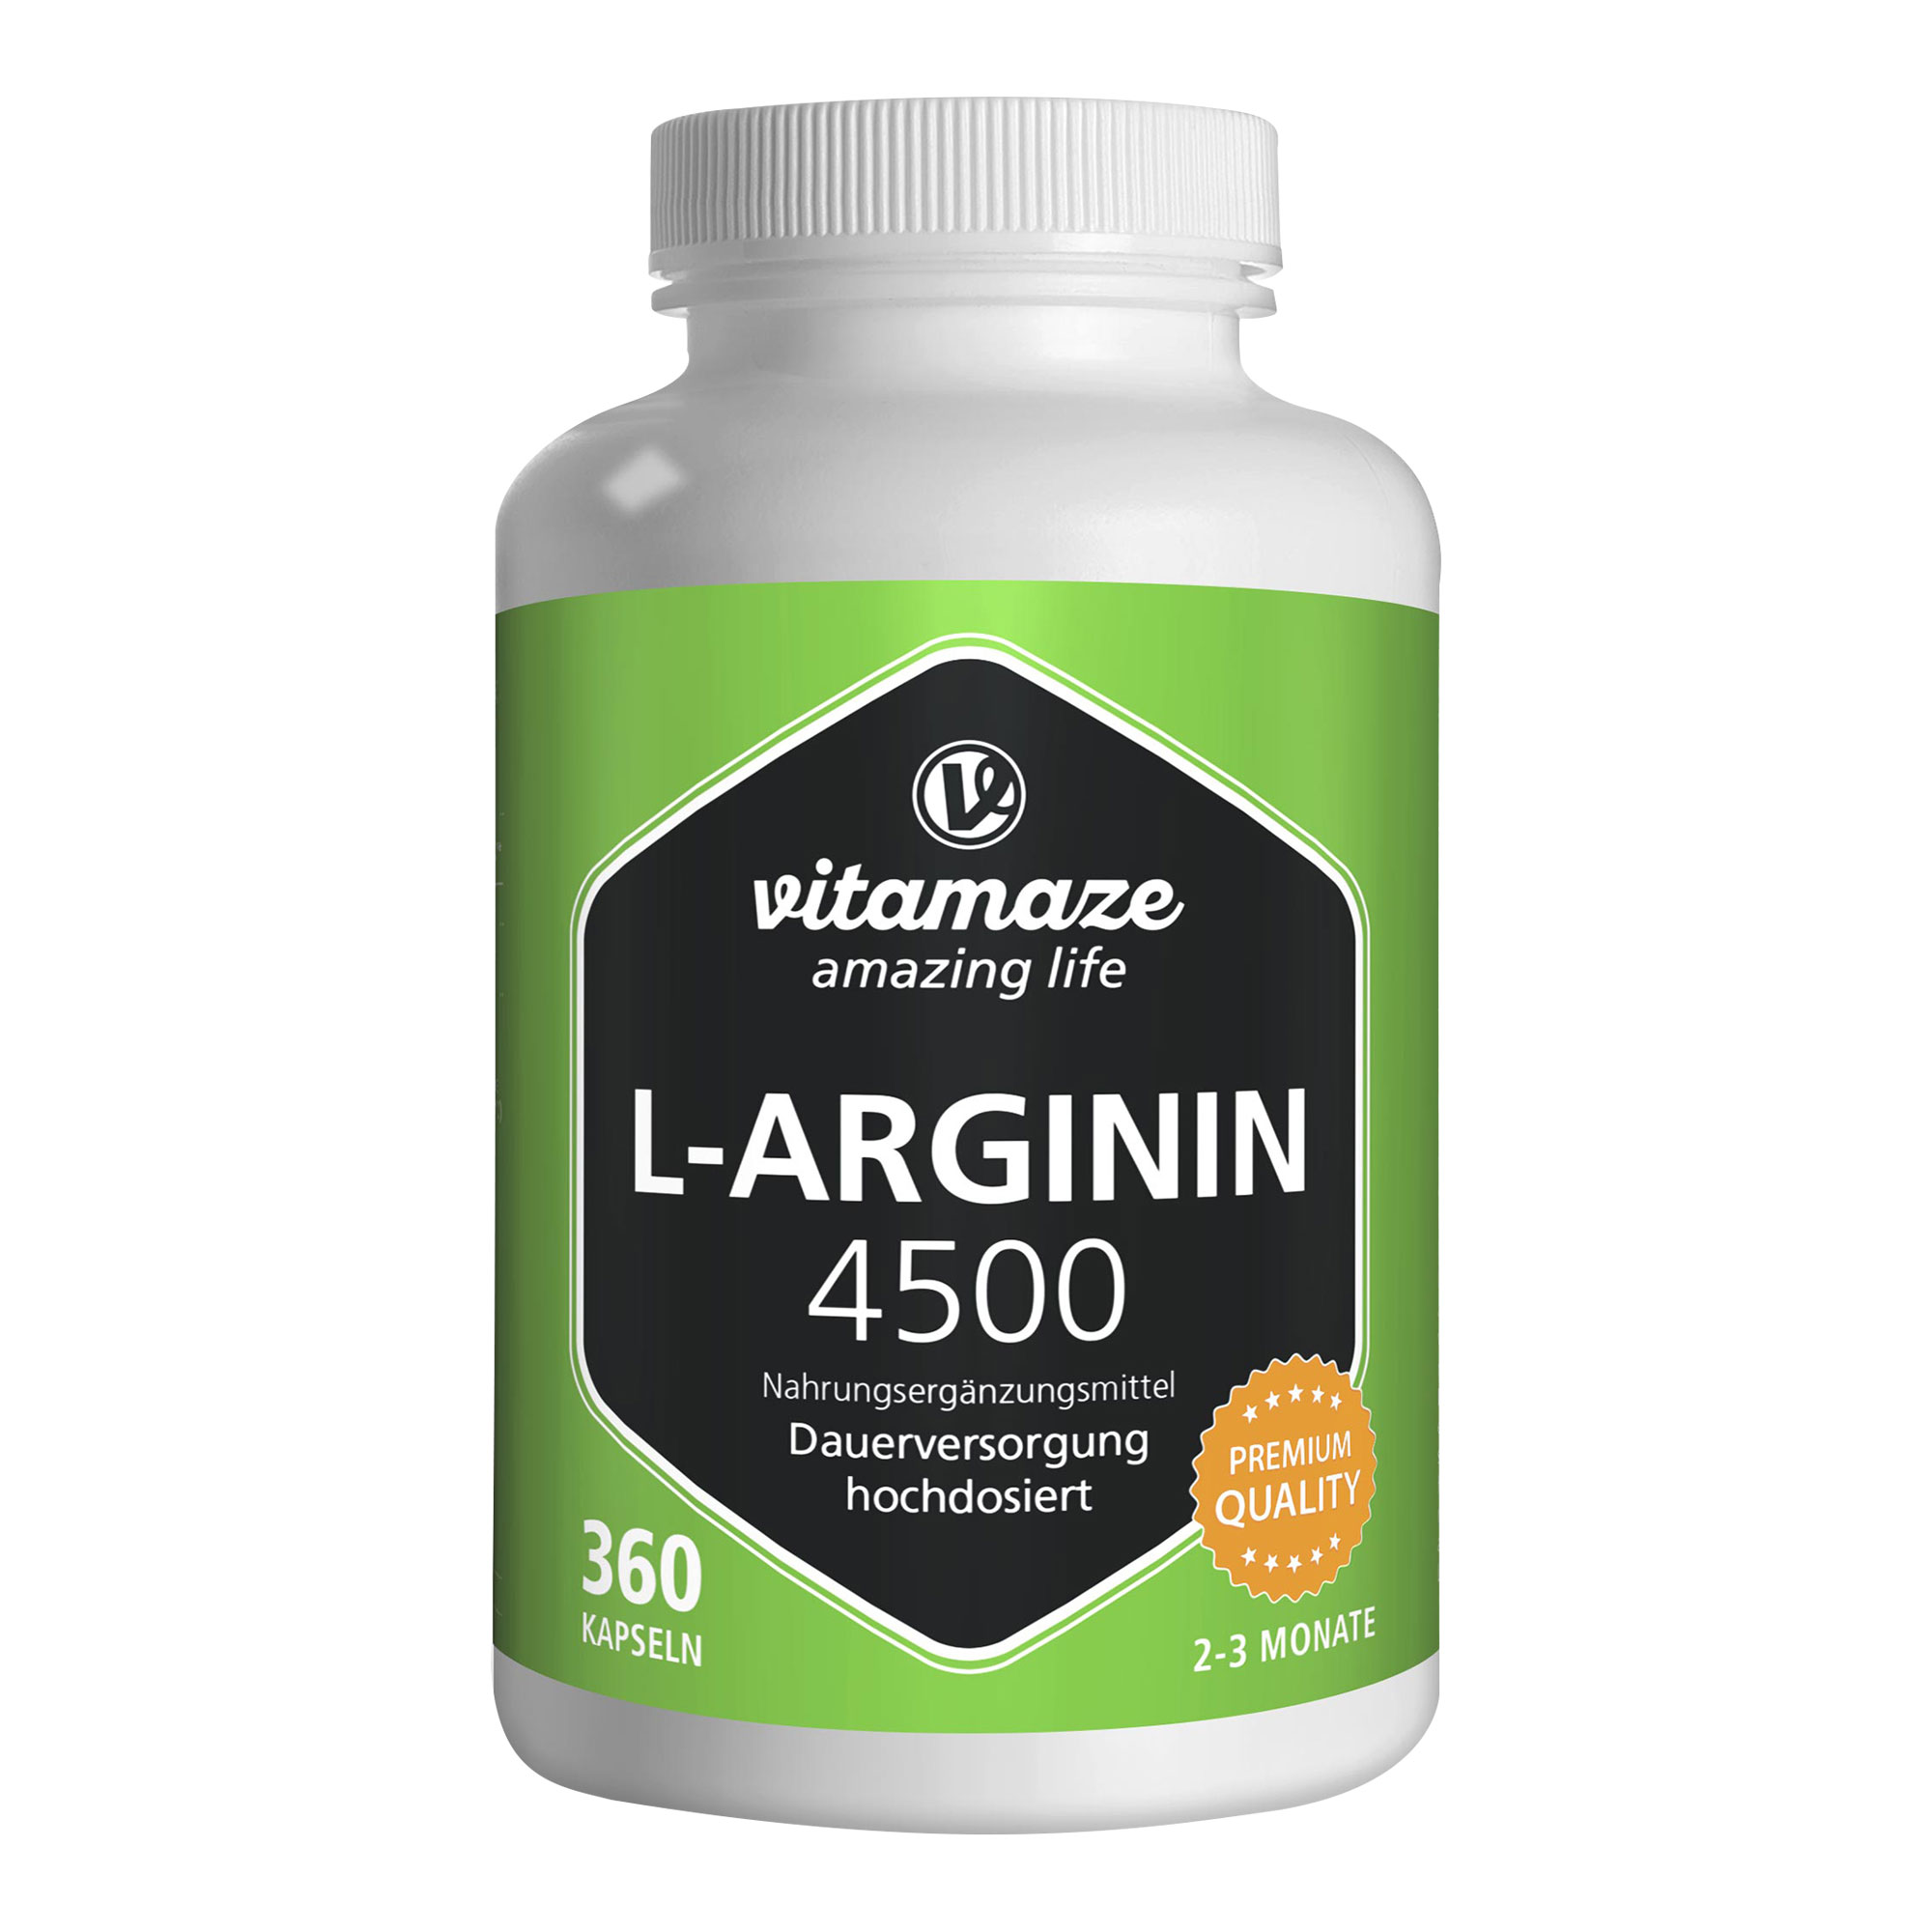 Nahrungsergänzungsmittel mit hochdosiertem L-Arginin.